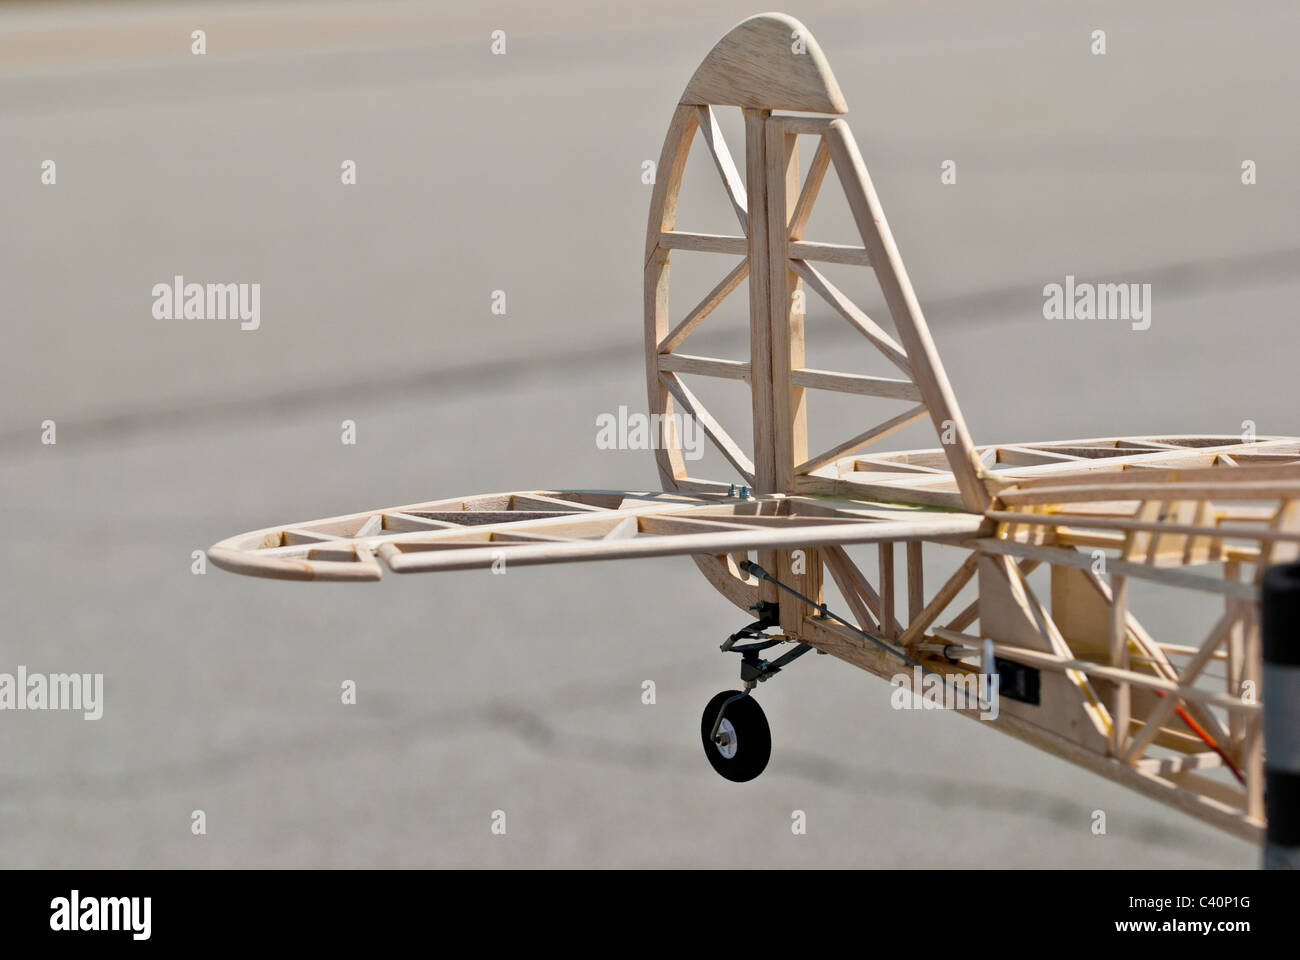 Modelo de estructura de cola del avión. Construcción en madera de balsa. Foto de stock